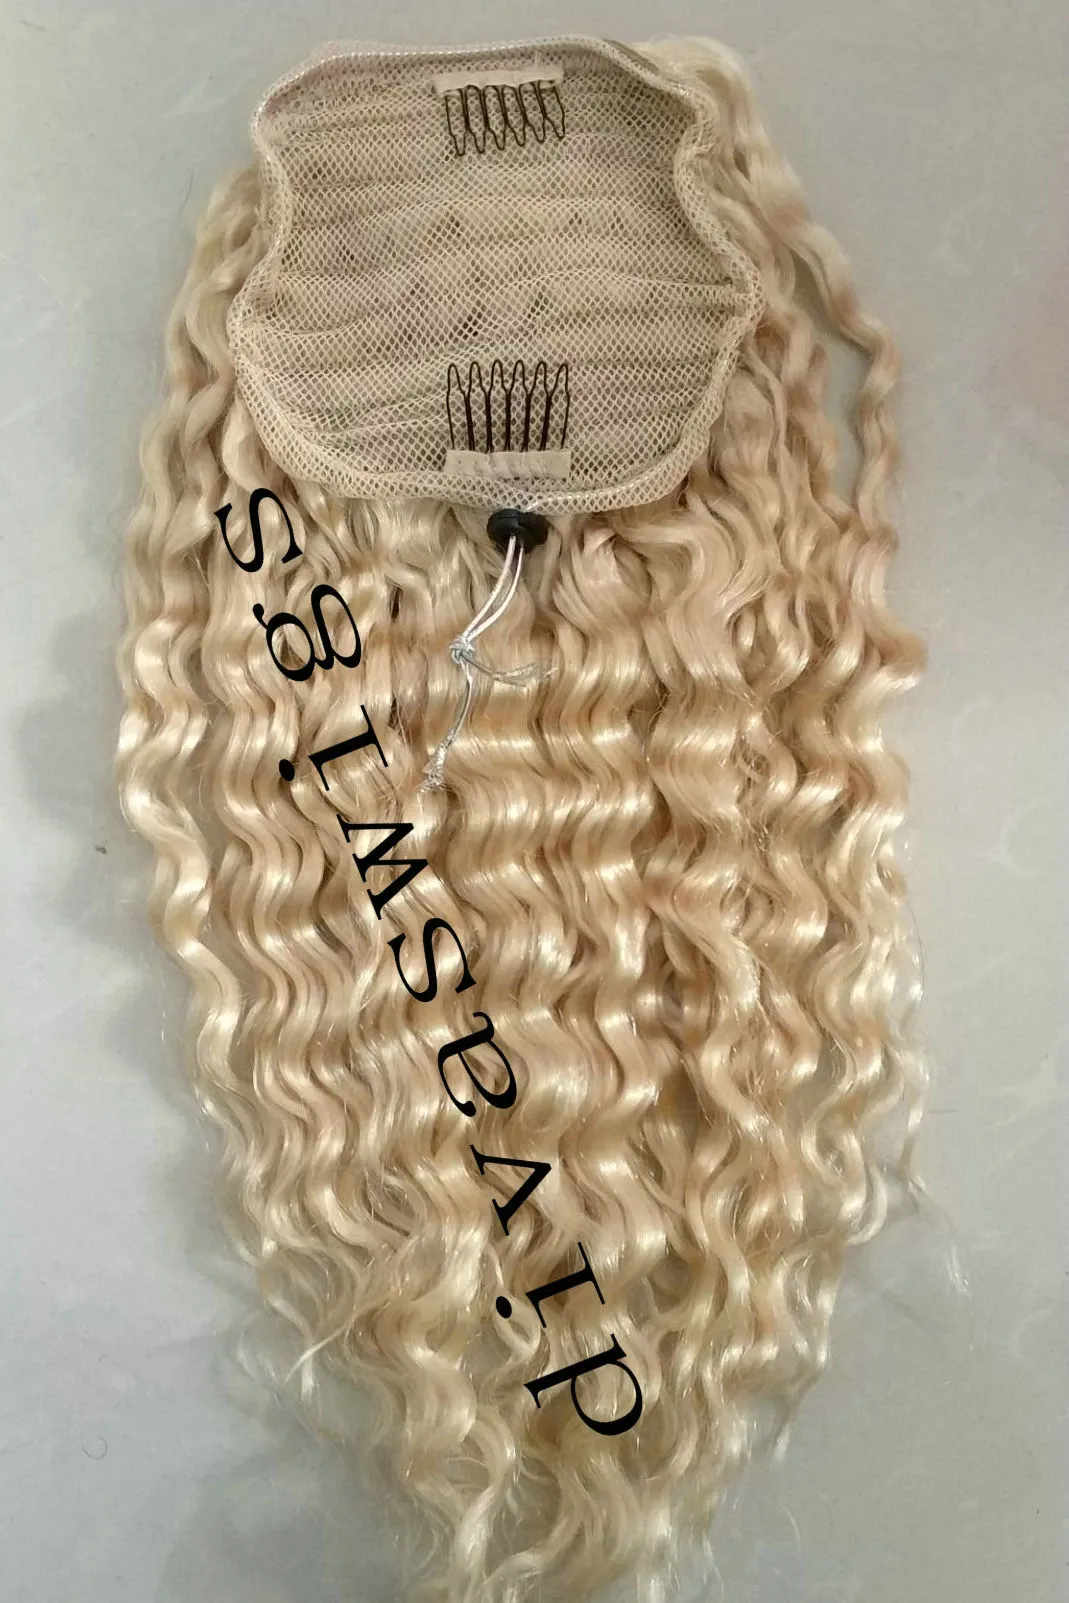 Европейский Remy белый блондин 613 хвостик девственница выдвижение человеческих волос полный кутикулы выровнены блондин глубокий вьющиеся волосы шнурок хвостик